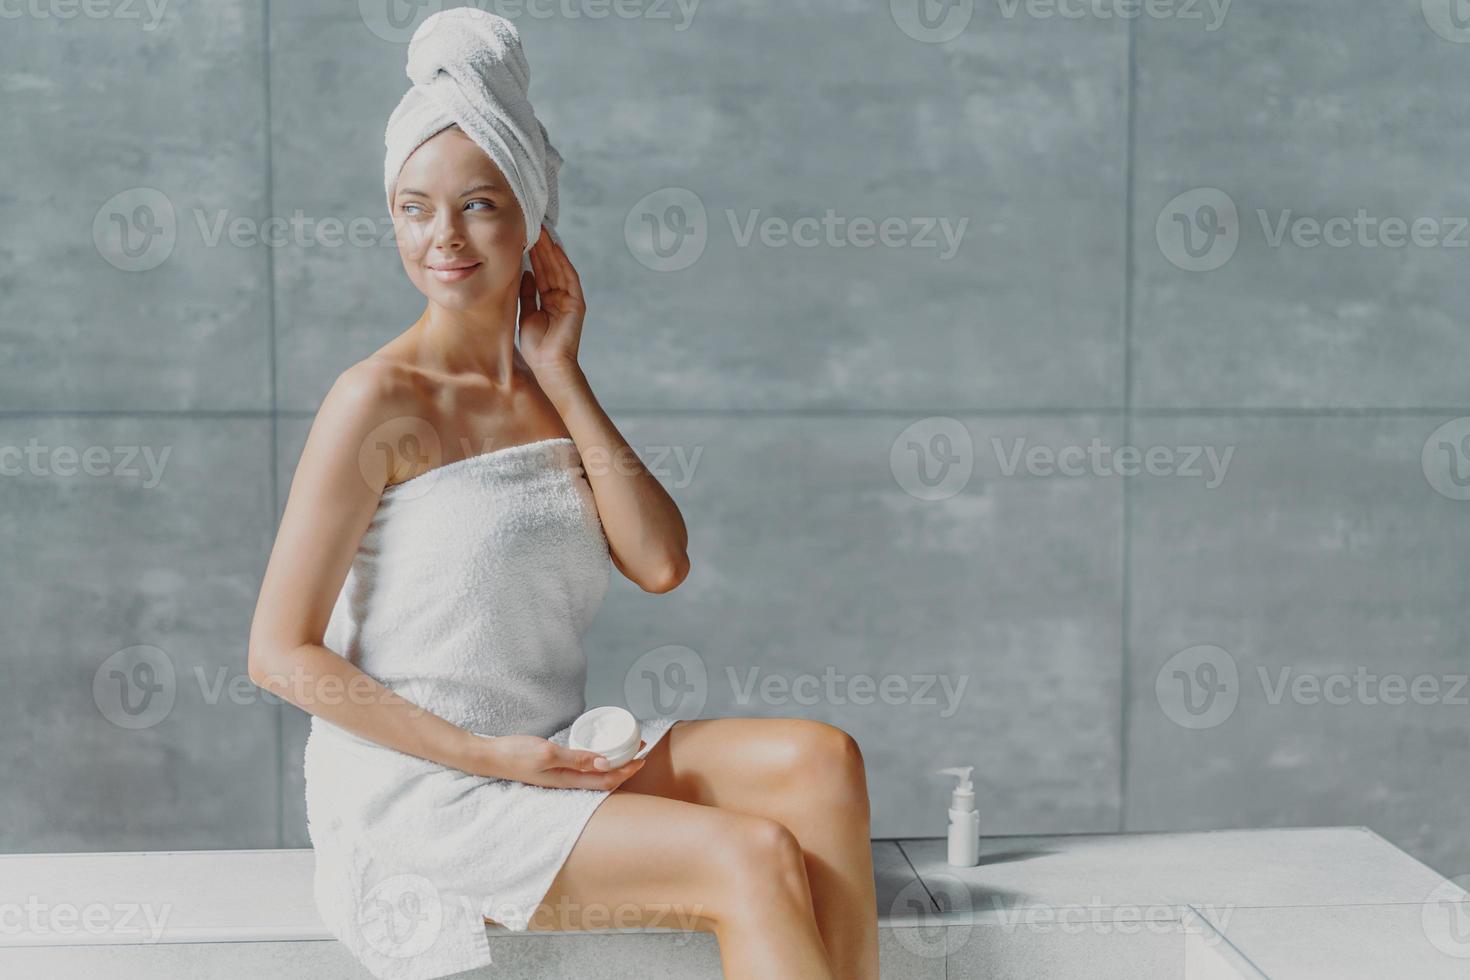 foto van aantrekkelijke nadenkende jonge vrouw kijkt weg met dromerige uitdrukking, brengt crème op het lichaam aan na het nemen van een bad, heeft een schone, frisse huid, poseert met blote schouders, geniet van het nemen van spa-procedures